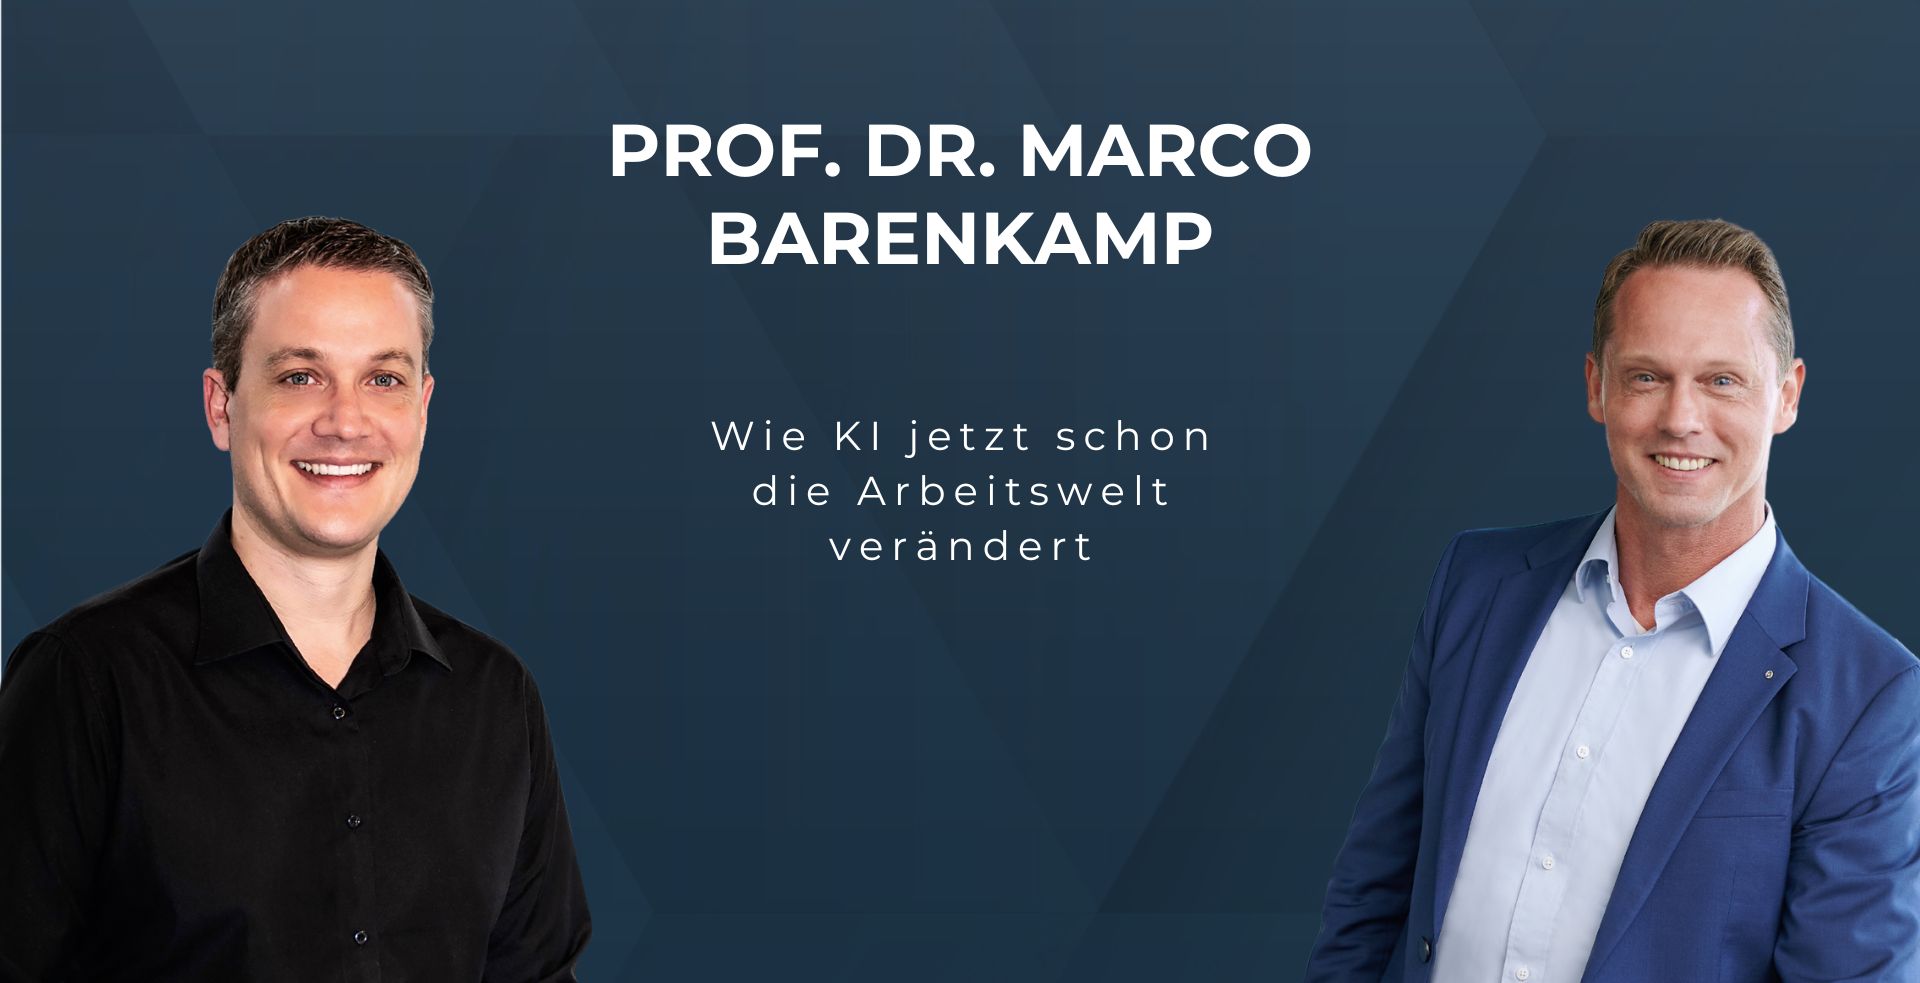 Wie KI jetzt schon die Arbeitswelt verändert: Prof. Dr. Marco Barenkamp im EpicWork Podcast